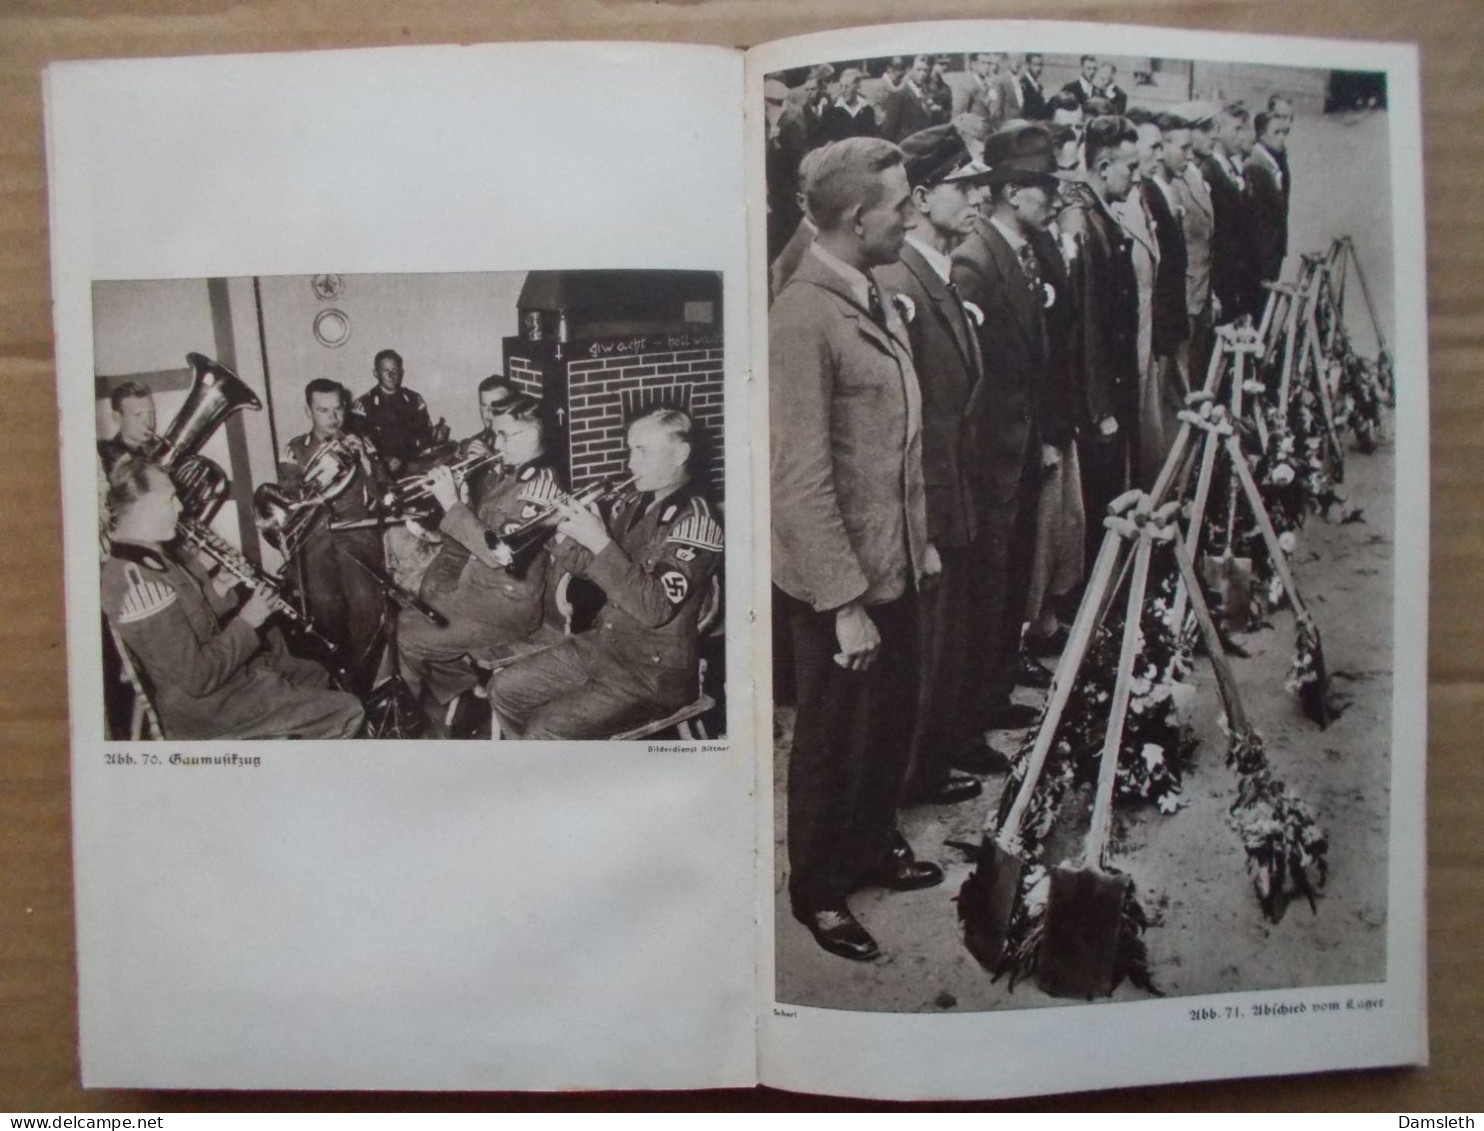 NS Deutschland 1937; Spaten und Aehre; RAD Reichsarbeitsdienst; Handbuch / Handbook; photos; NSDAP